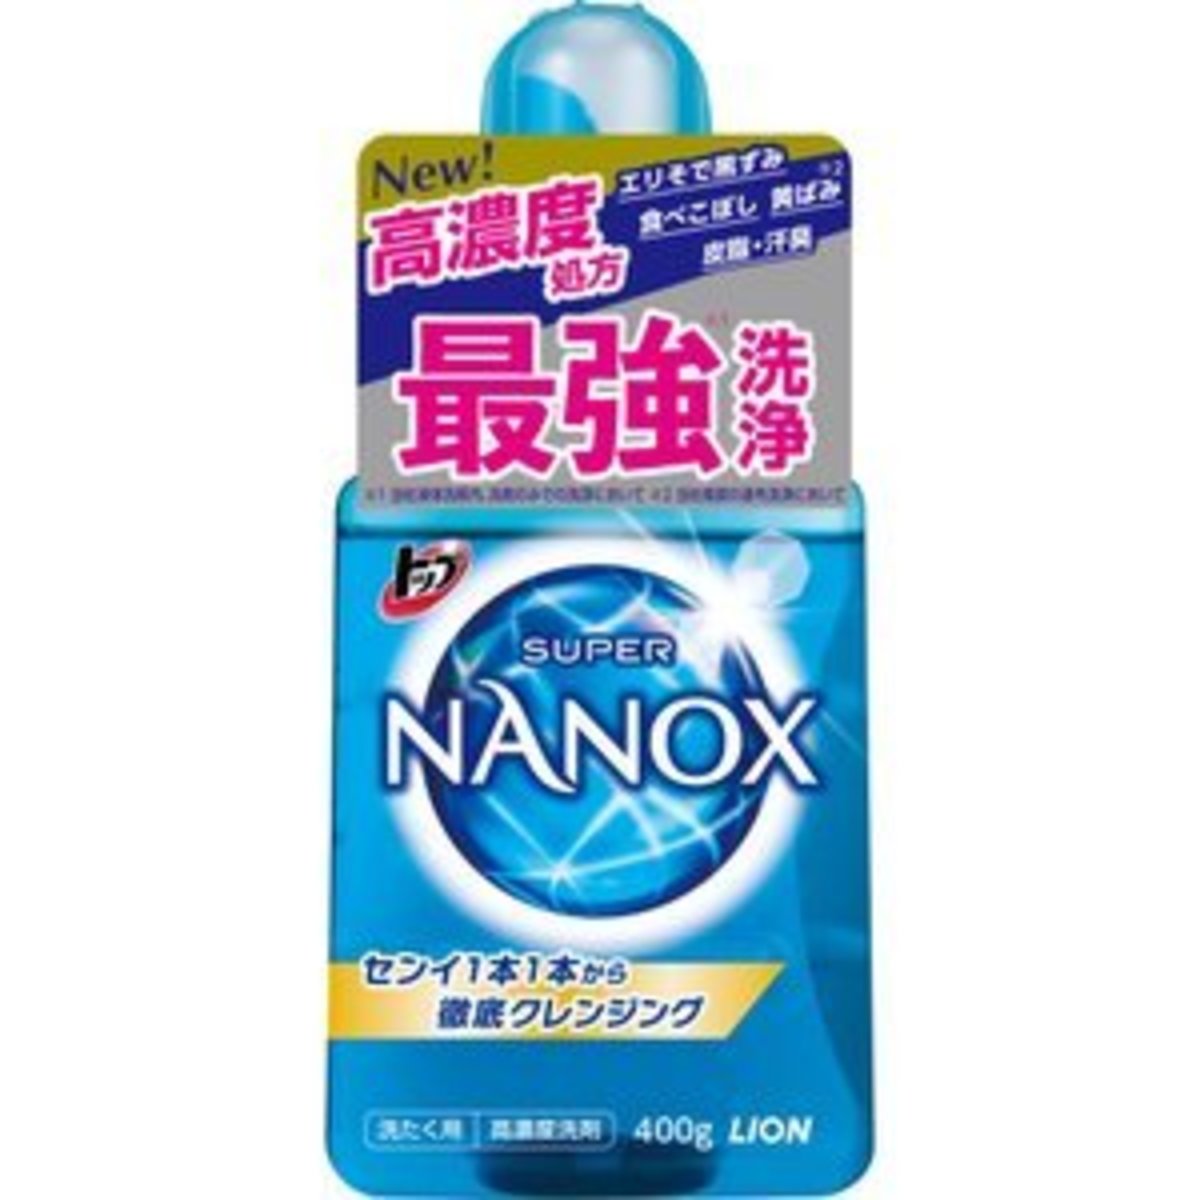 納米樂 Super NANOX超濃縮洗衣液 400g (包裝隨機出)